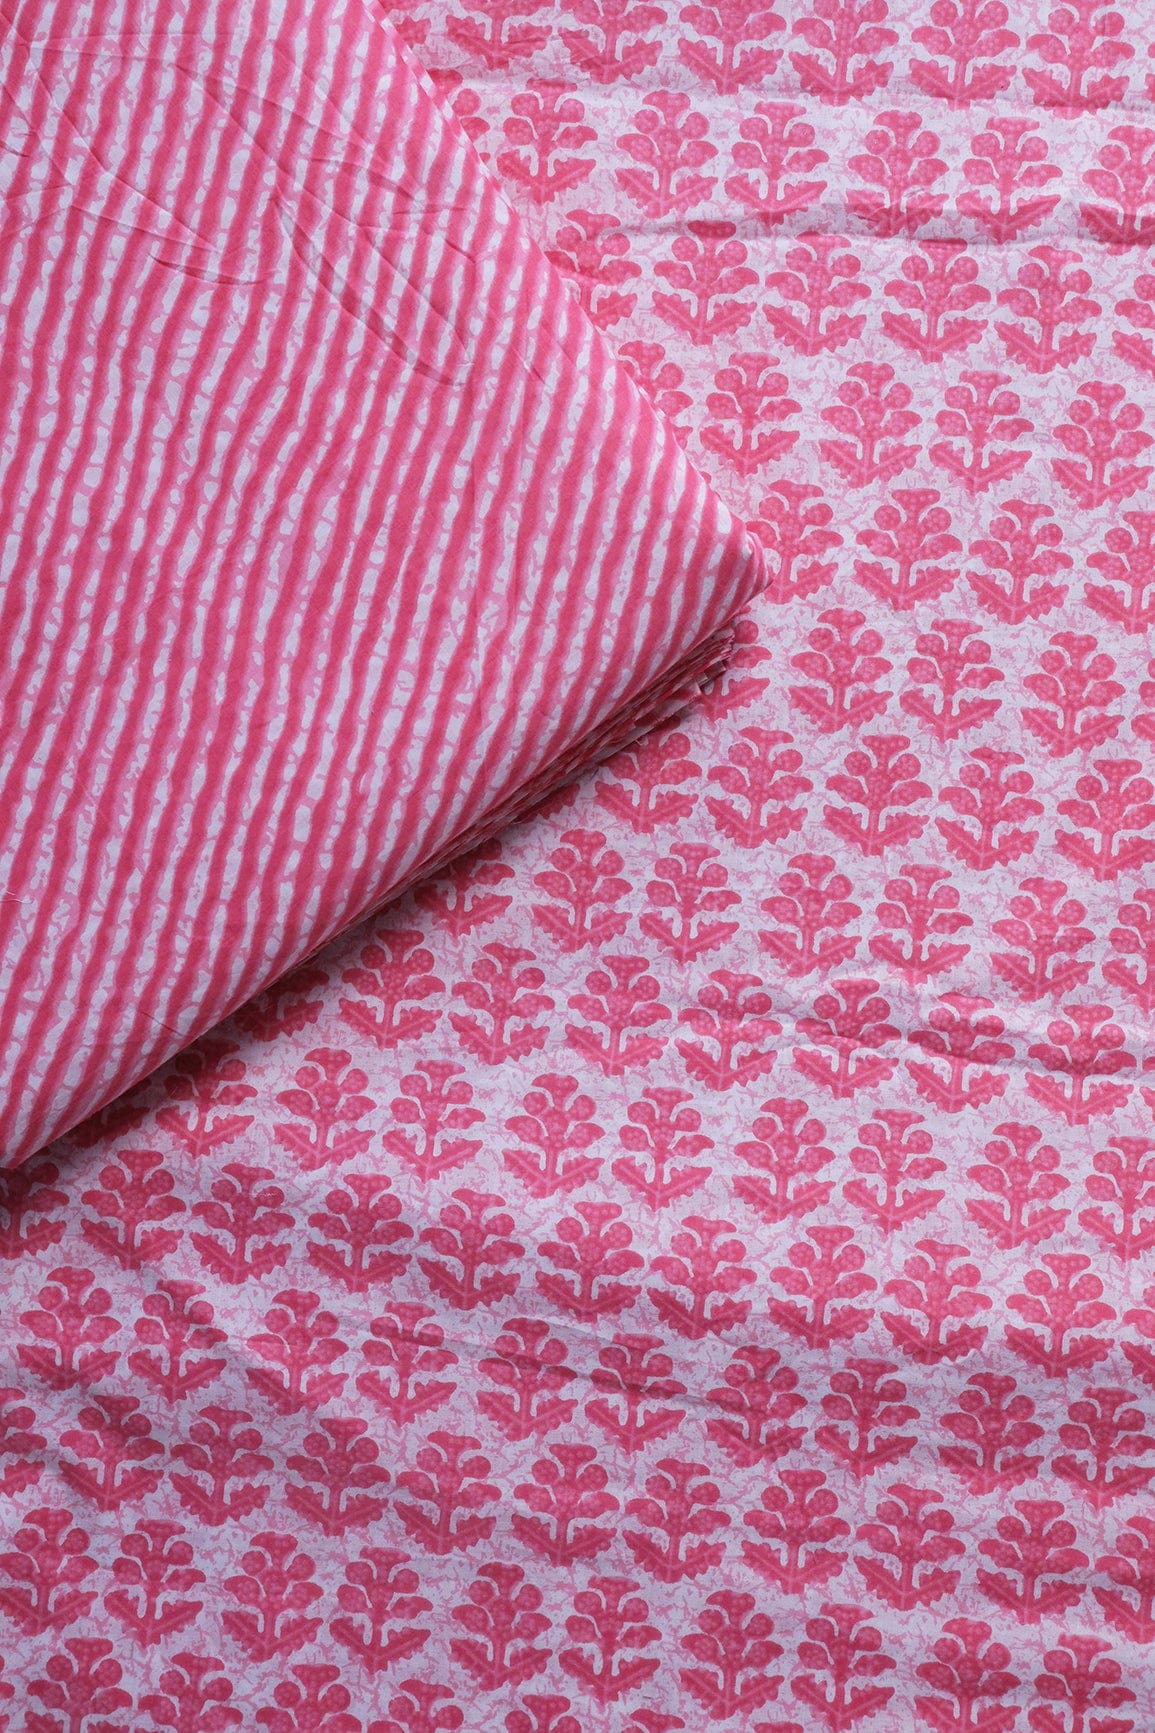 doeraa SUIT SETS Pink And White Pure Cotton Unstitched Suit Set (2 Piece)